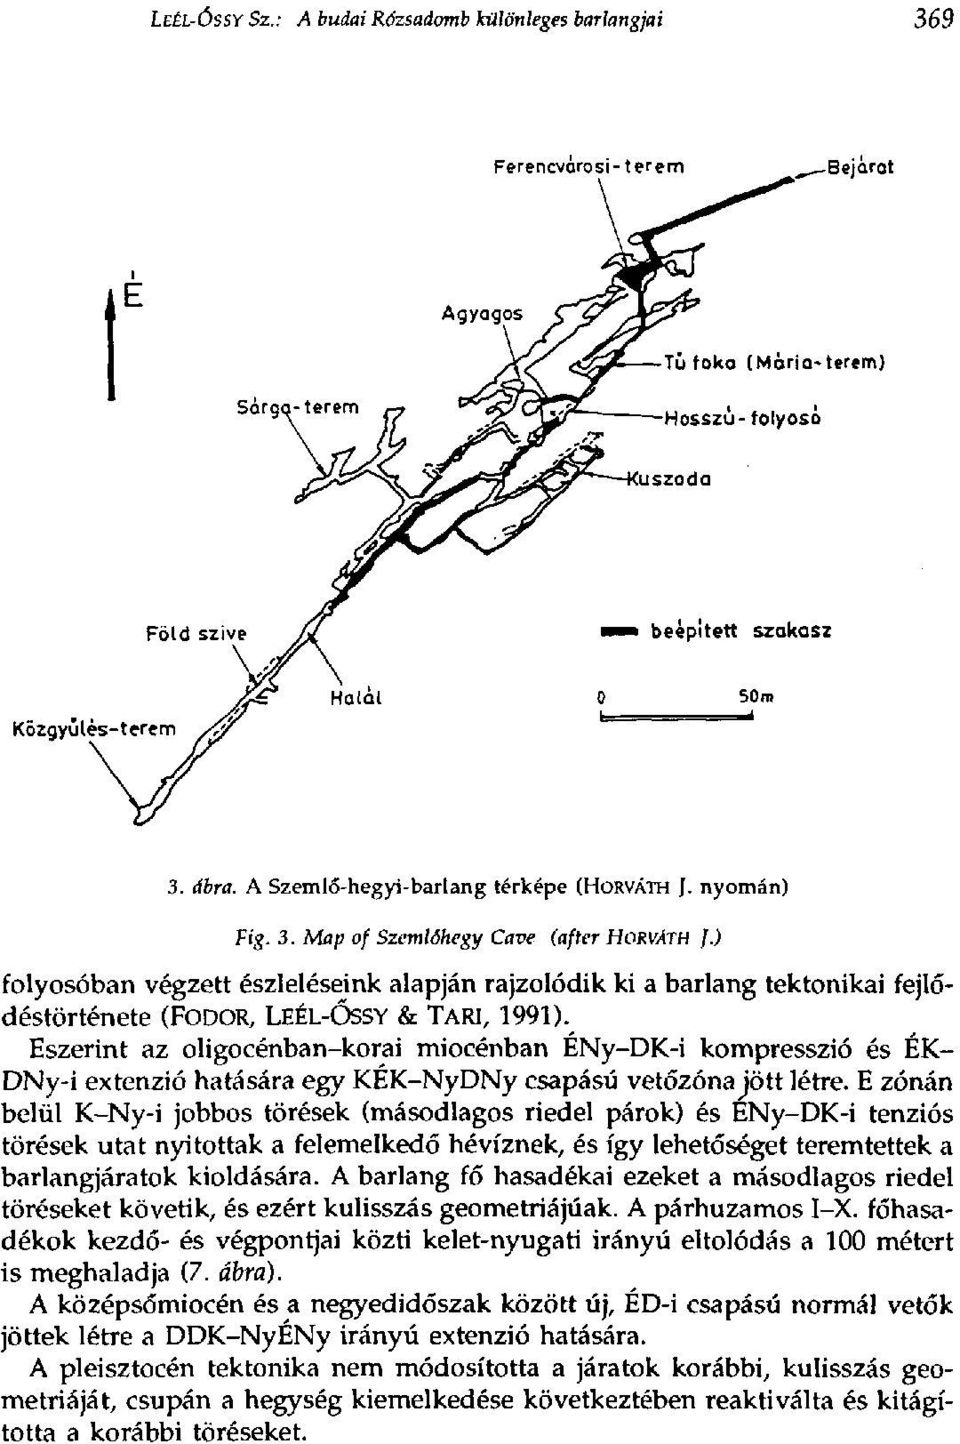 Eszerint az oligocénban-korai miocénban ÉNy-DK-i kompresszió és ÉK- DNy-i extenzió hatására egy KEK-NyDNy csapású vetőzóna jött létre.